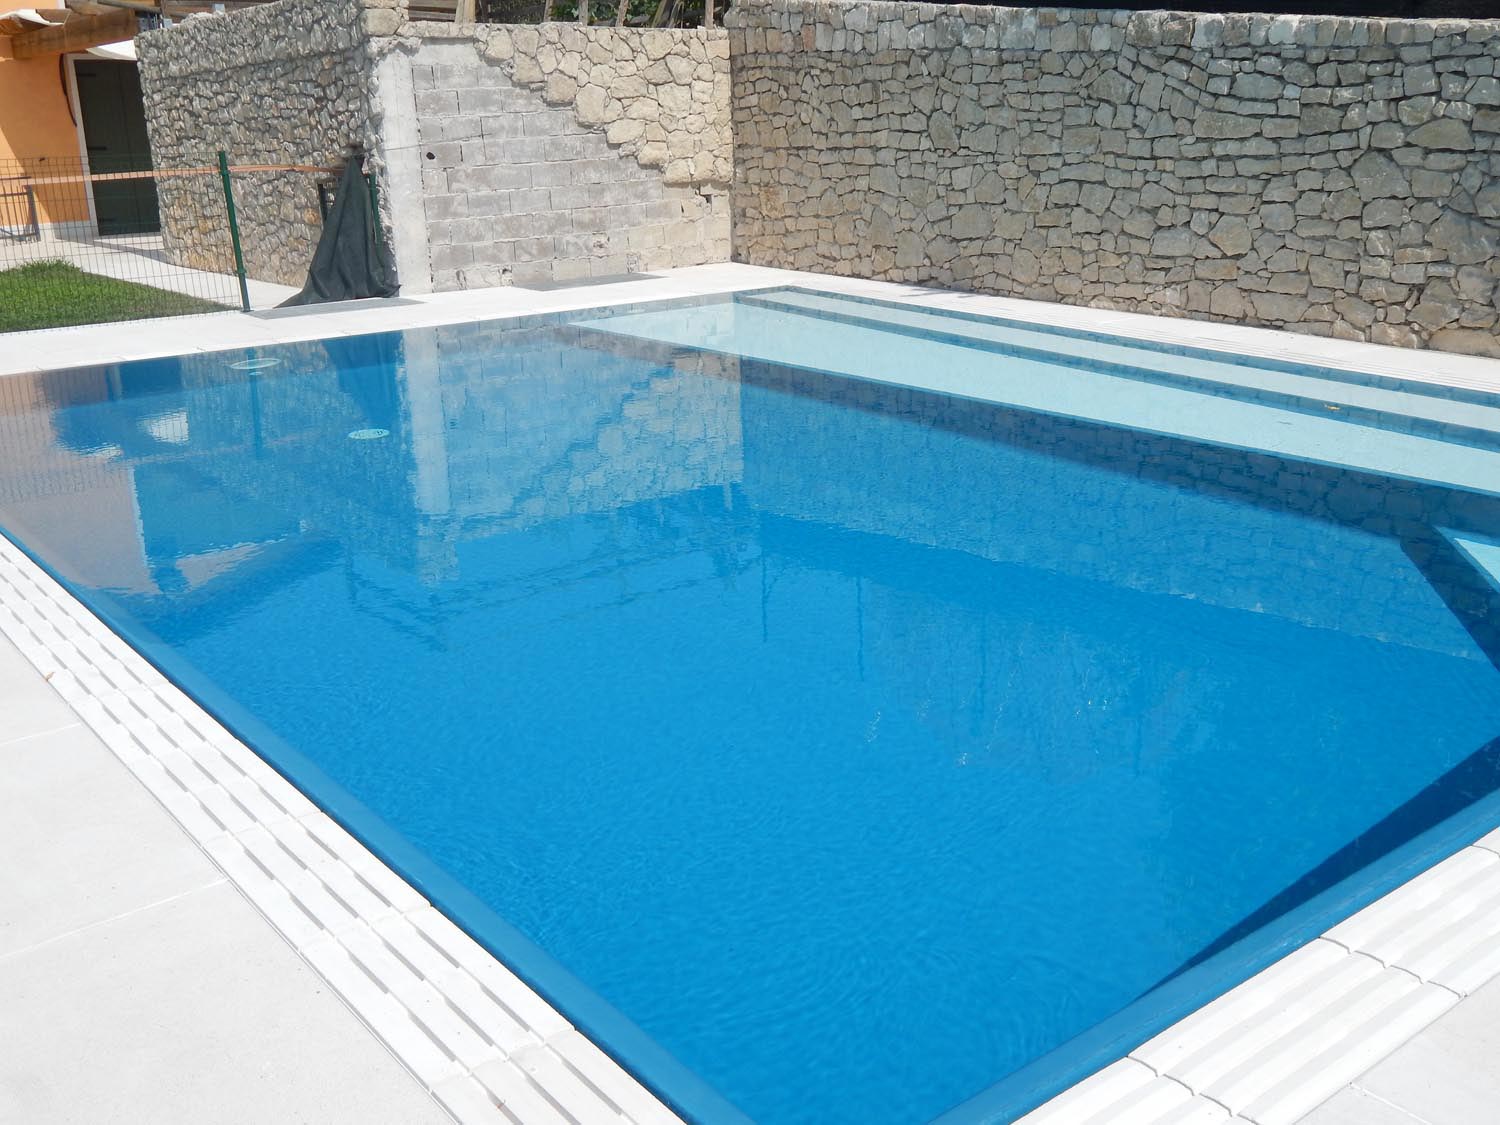 Piscina a sfioro isotermica con rivestimento Sea Blu e scalini longitudinali chiari. La piscina è impreziosita da un bordo in pietra ricostruita che riprende le tonalità chiare della pavimentazione circostante.